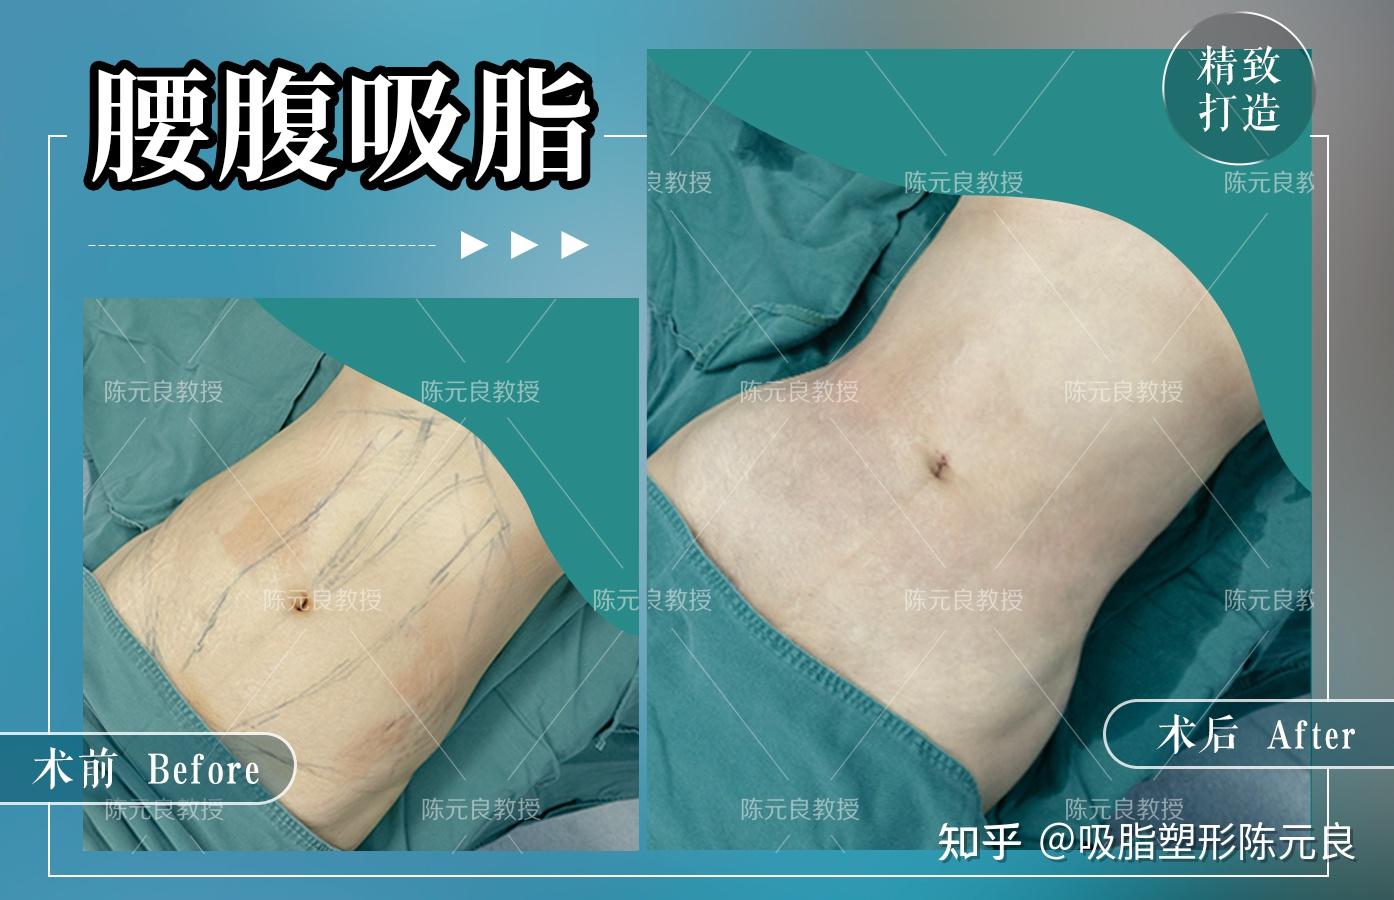 杭州哪个医生做吸脂好？主要是腰腹、大腿、面部吸脂领域的，最近天气凉爽，有考虑做吸脂塑形手术。 - 知乎